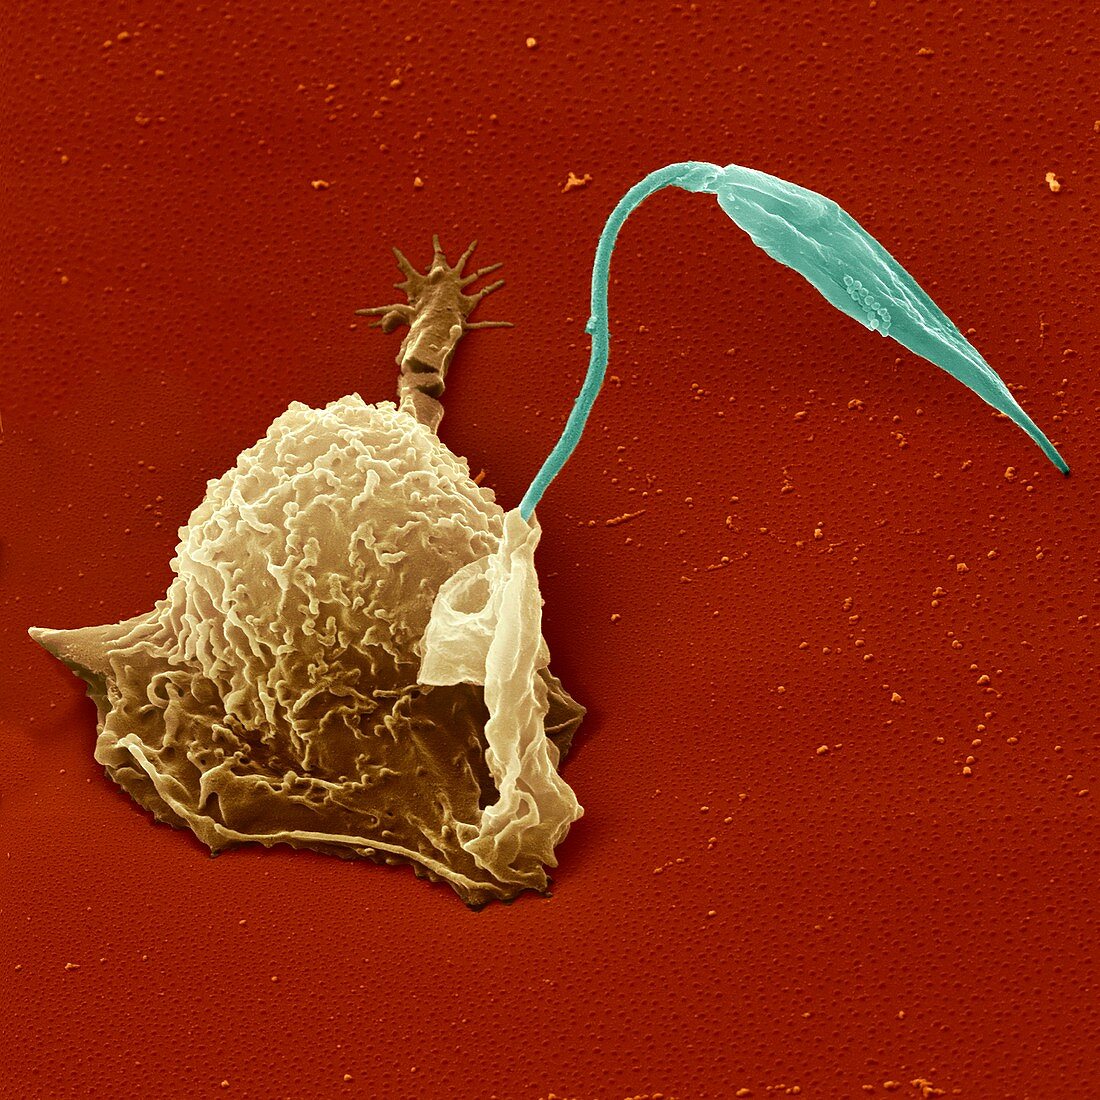 Macrophage engulfing protozoan,SEM